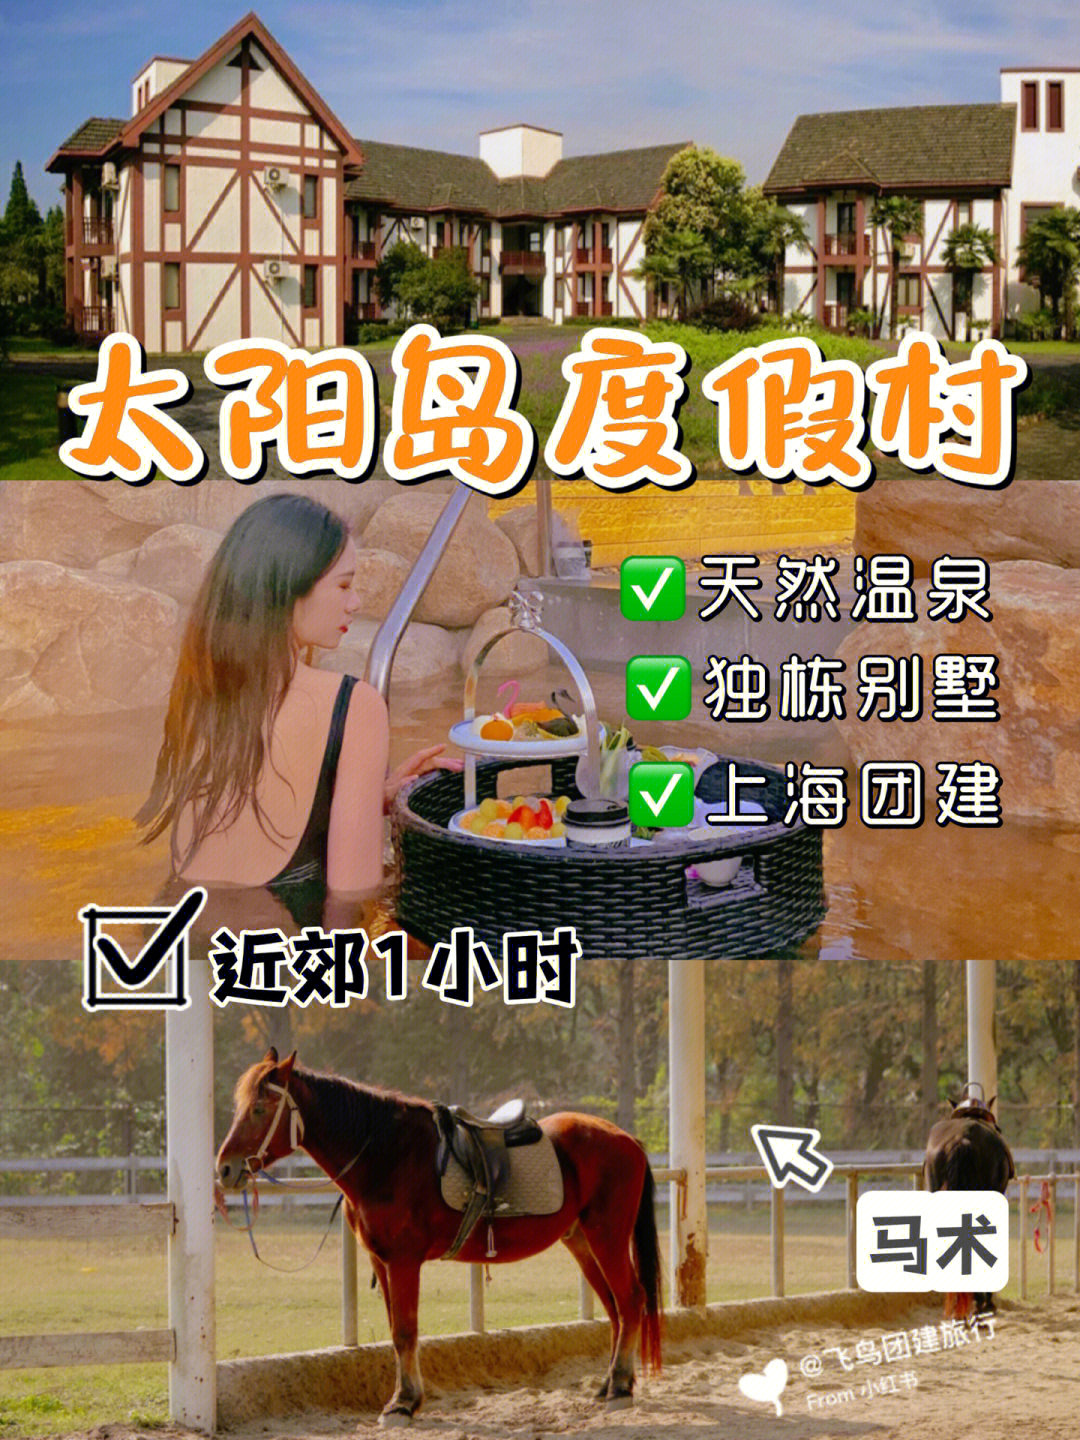 青浦太阳岛度假村电话图片